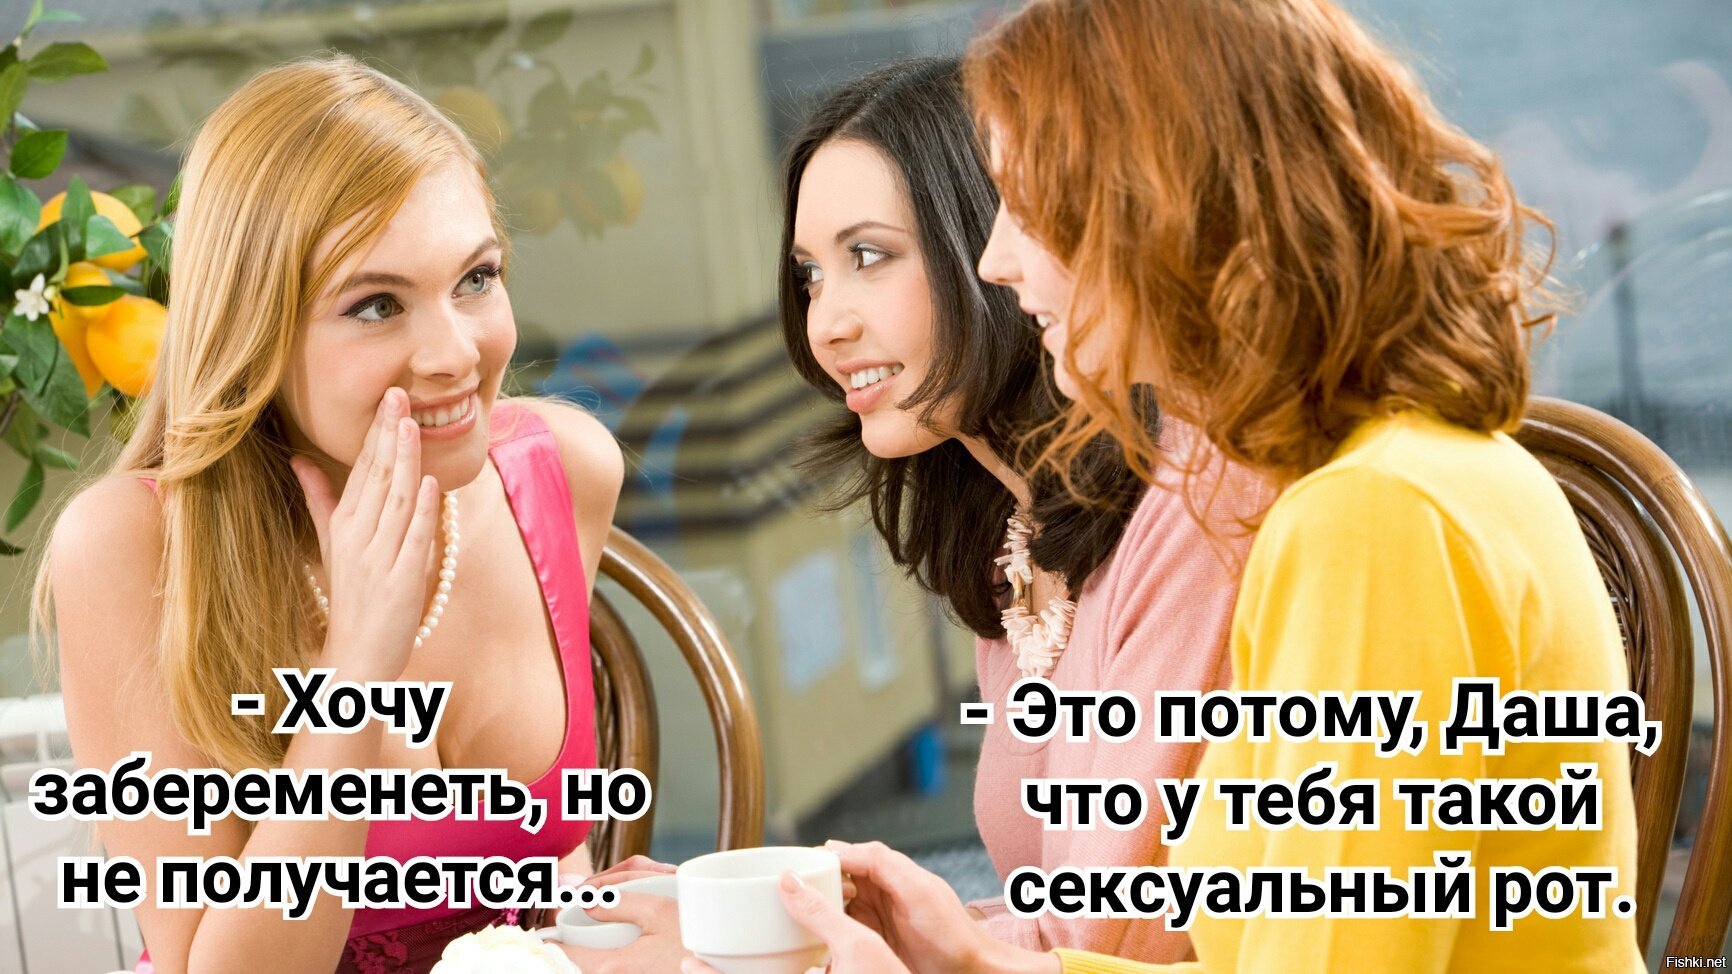 Муж жена и подружка русская. Подруги болтают. Женщины сплетничают. Подруги обсуждают. Девушка хвастается.